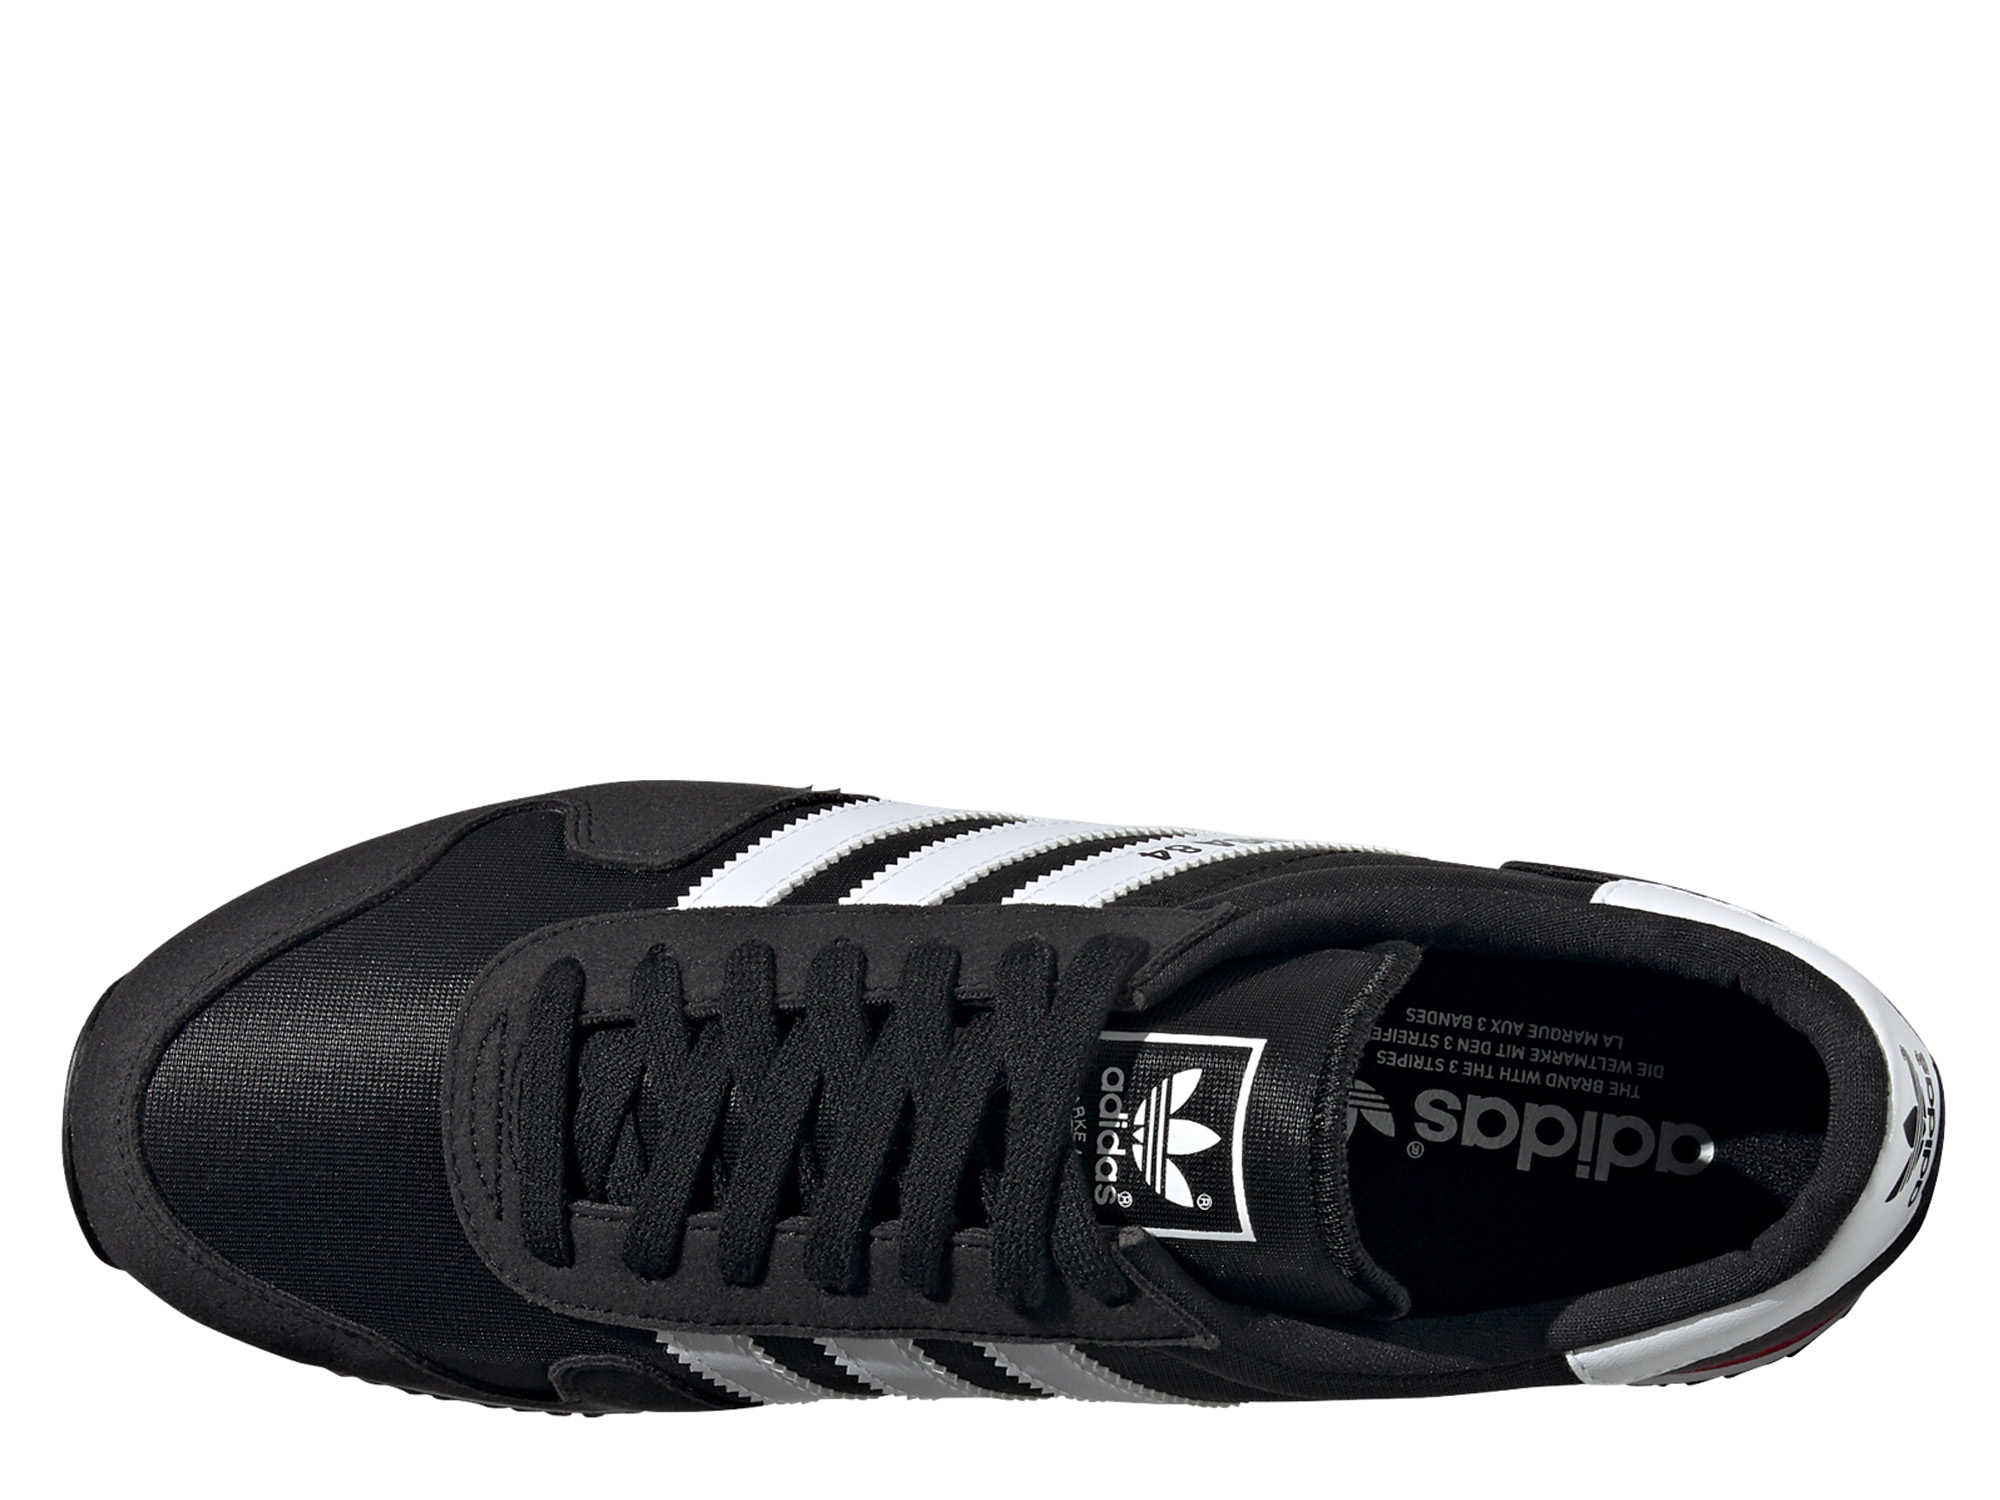 Adidas Originals USA 84 Herren Sneaker